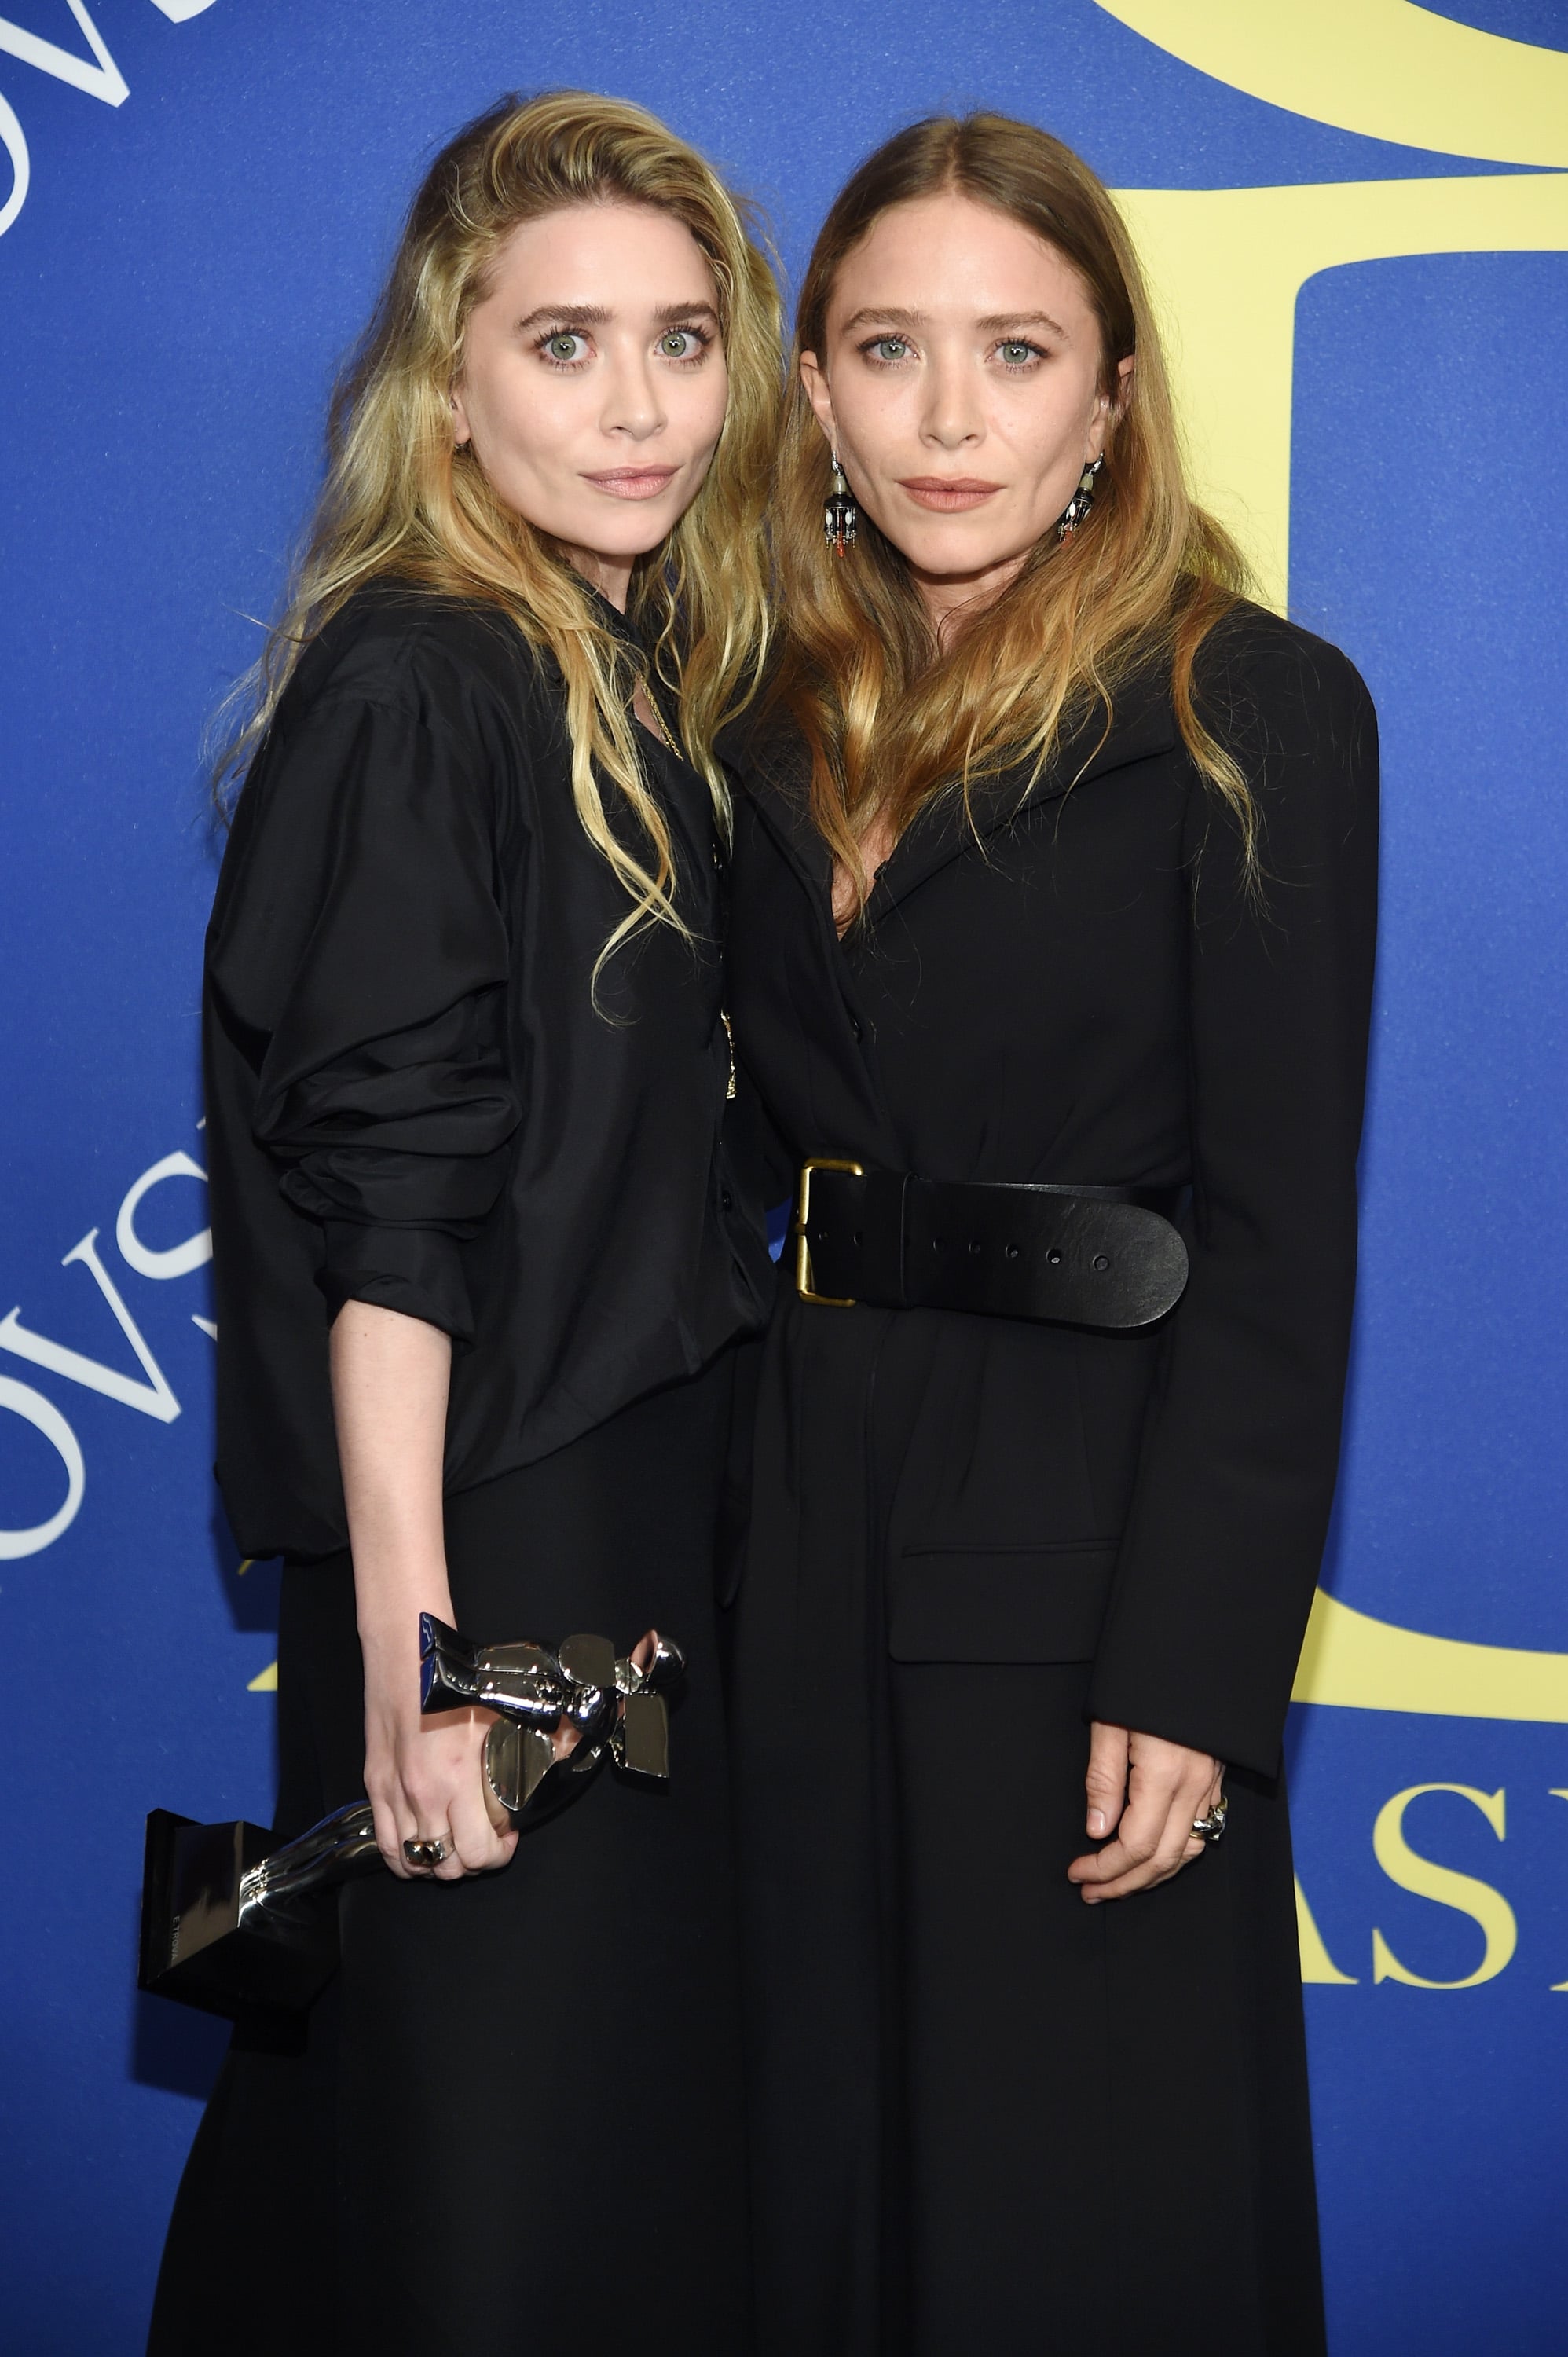 Ashley en Mary-Kate Olsen | Mary kate olsen style, Olsen twins style, Mary  kate olsen